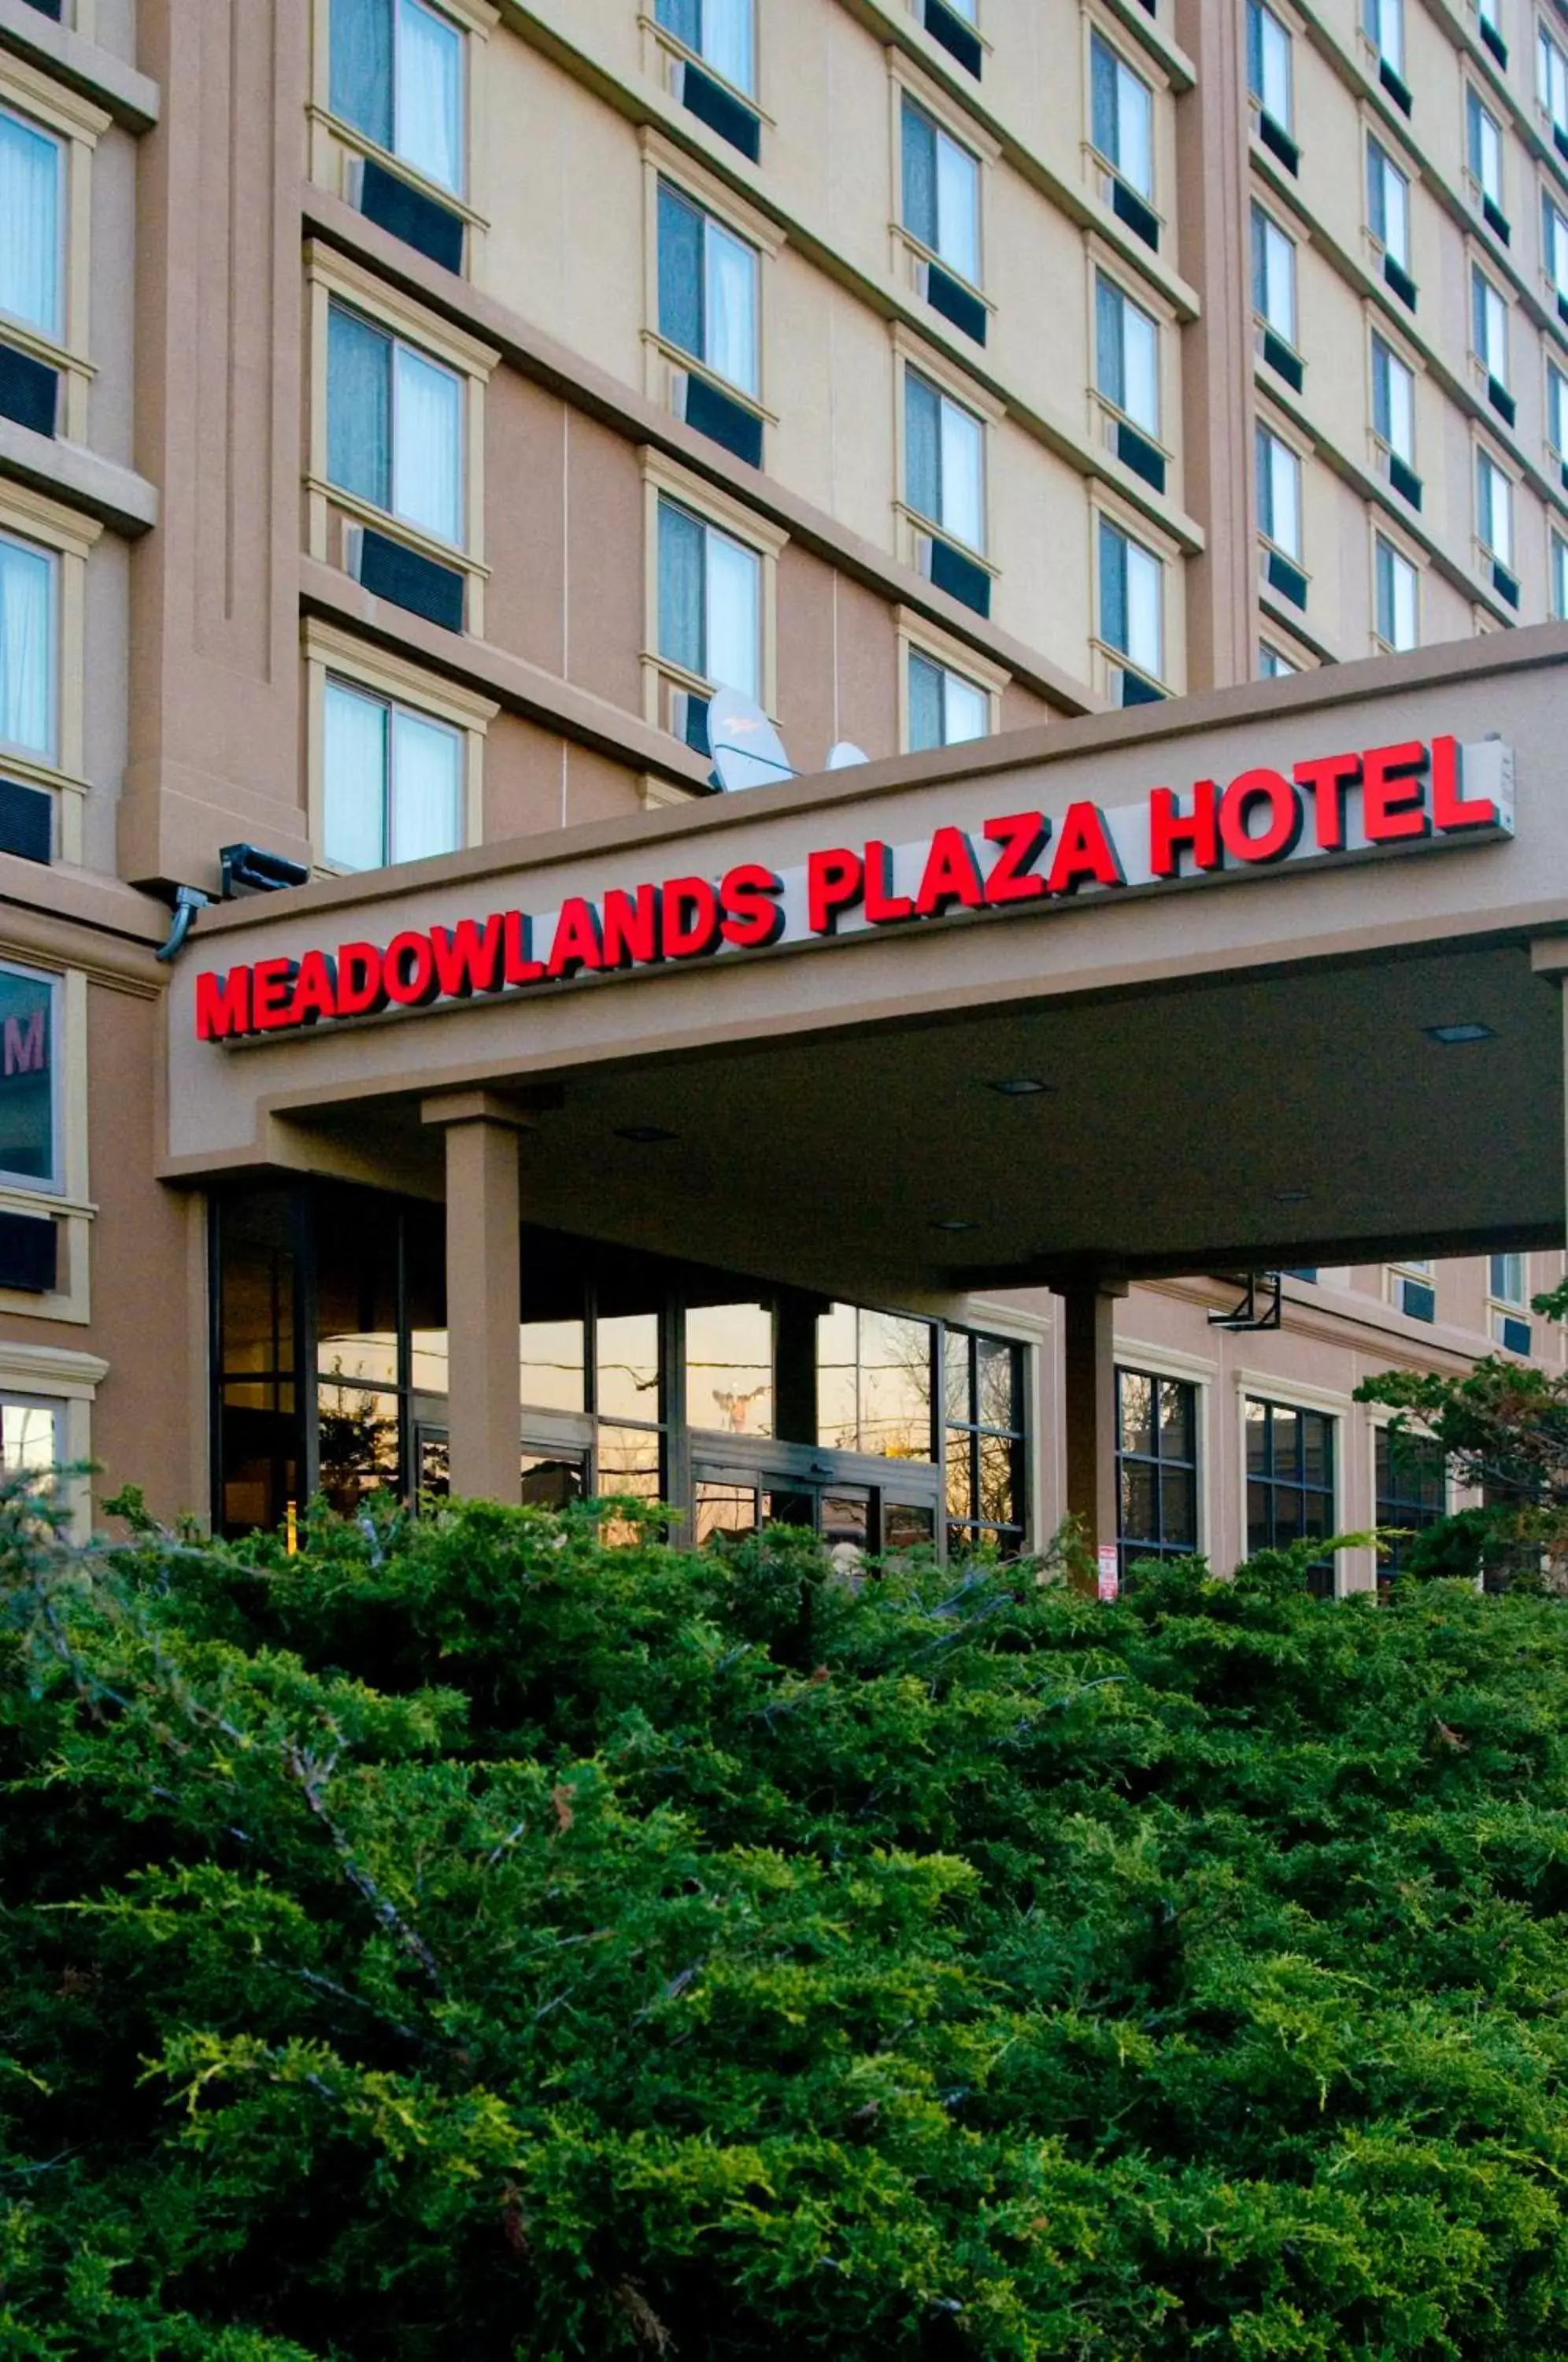 Facade/entrance in Meadowlands Plaza Hotel